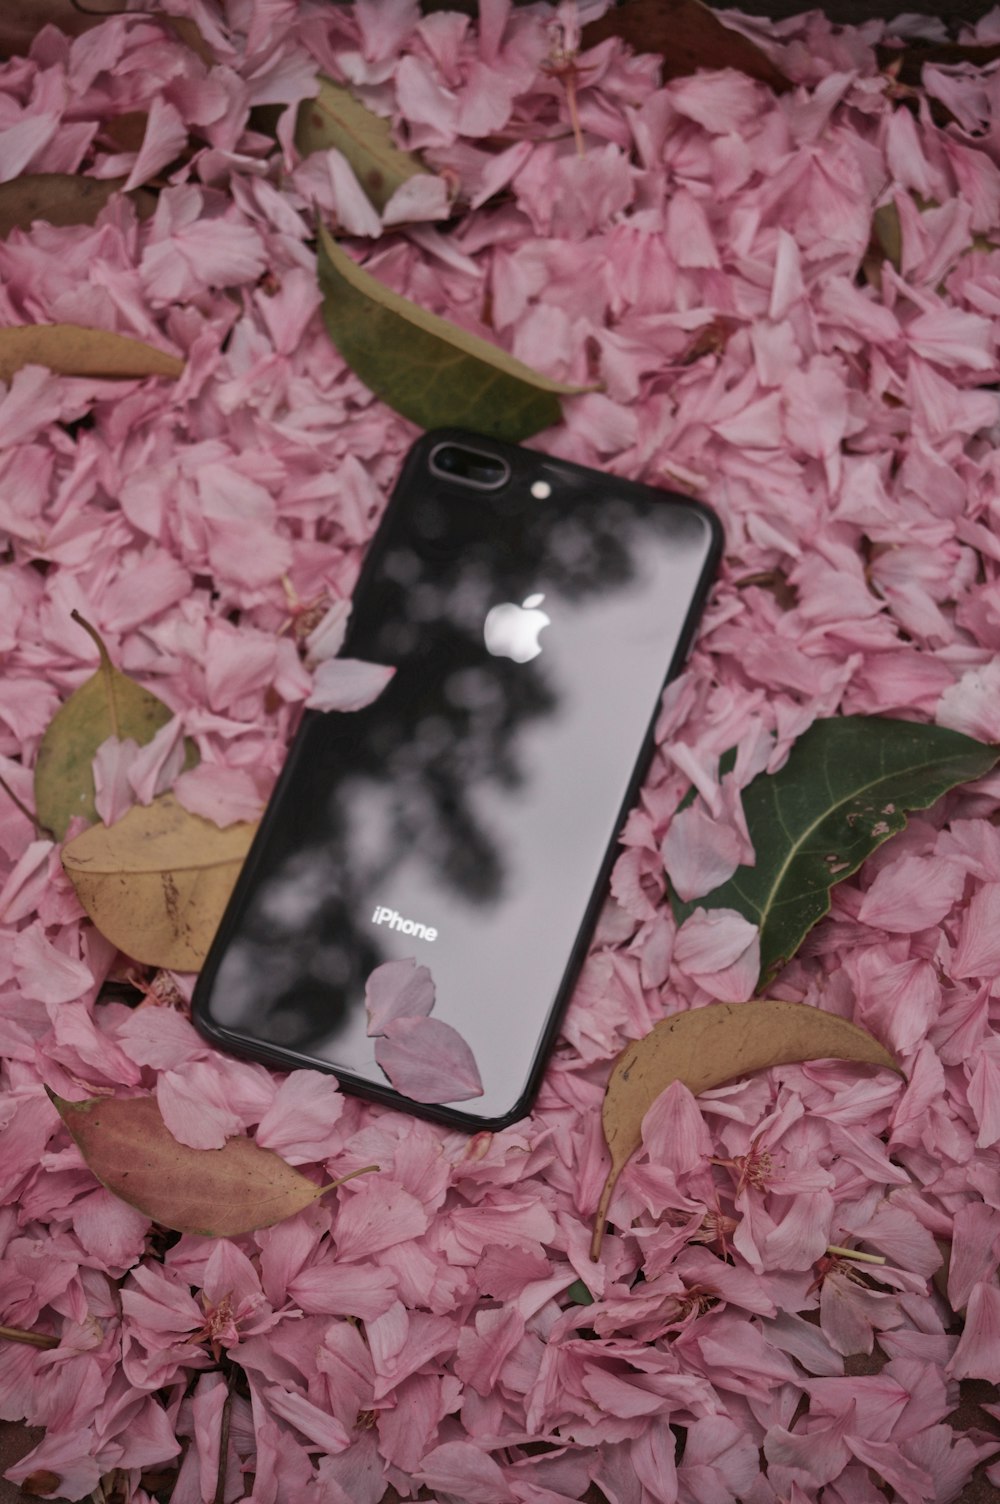 iPhone 6 grigio siderale su foglie rosa e verdi